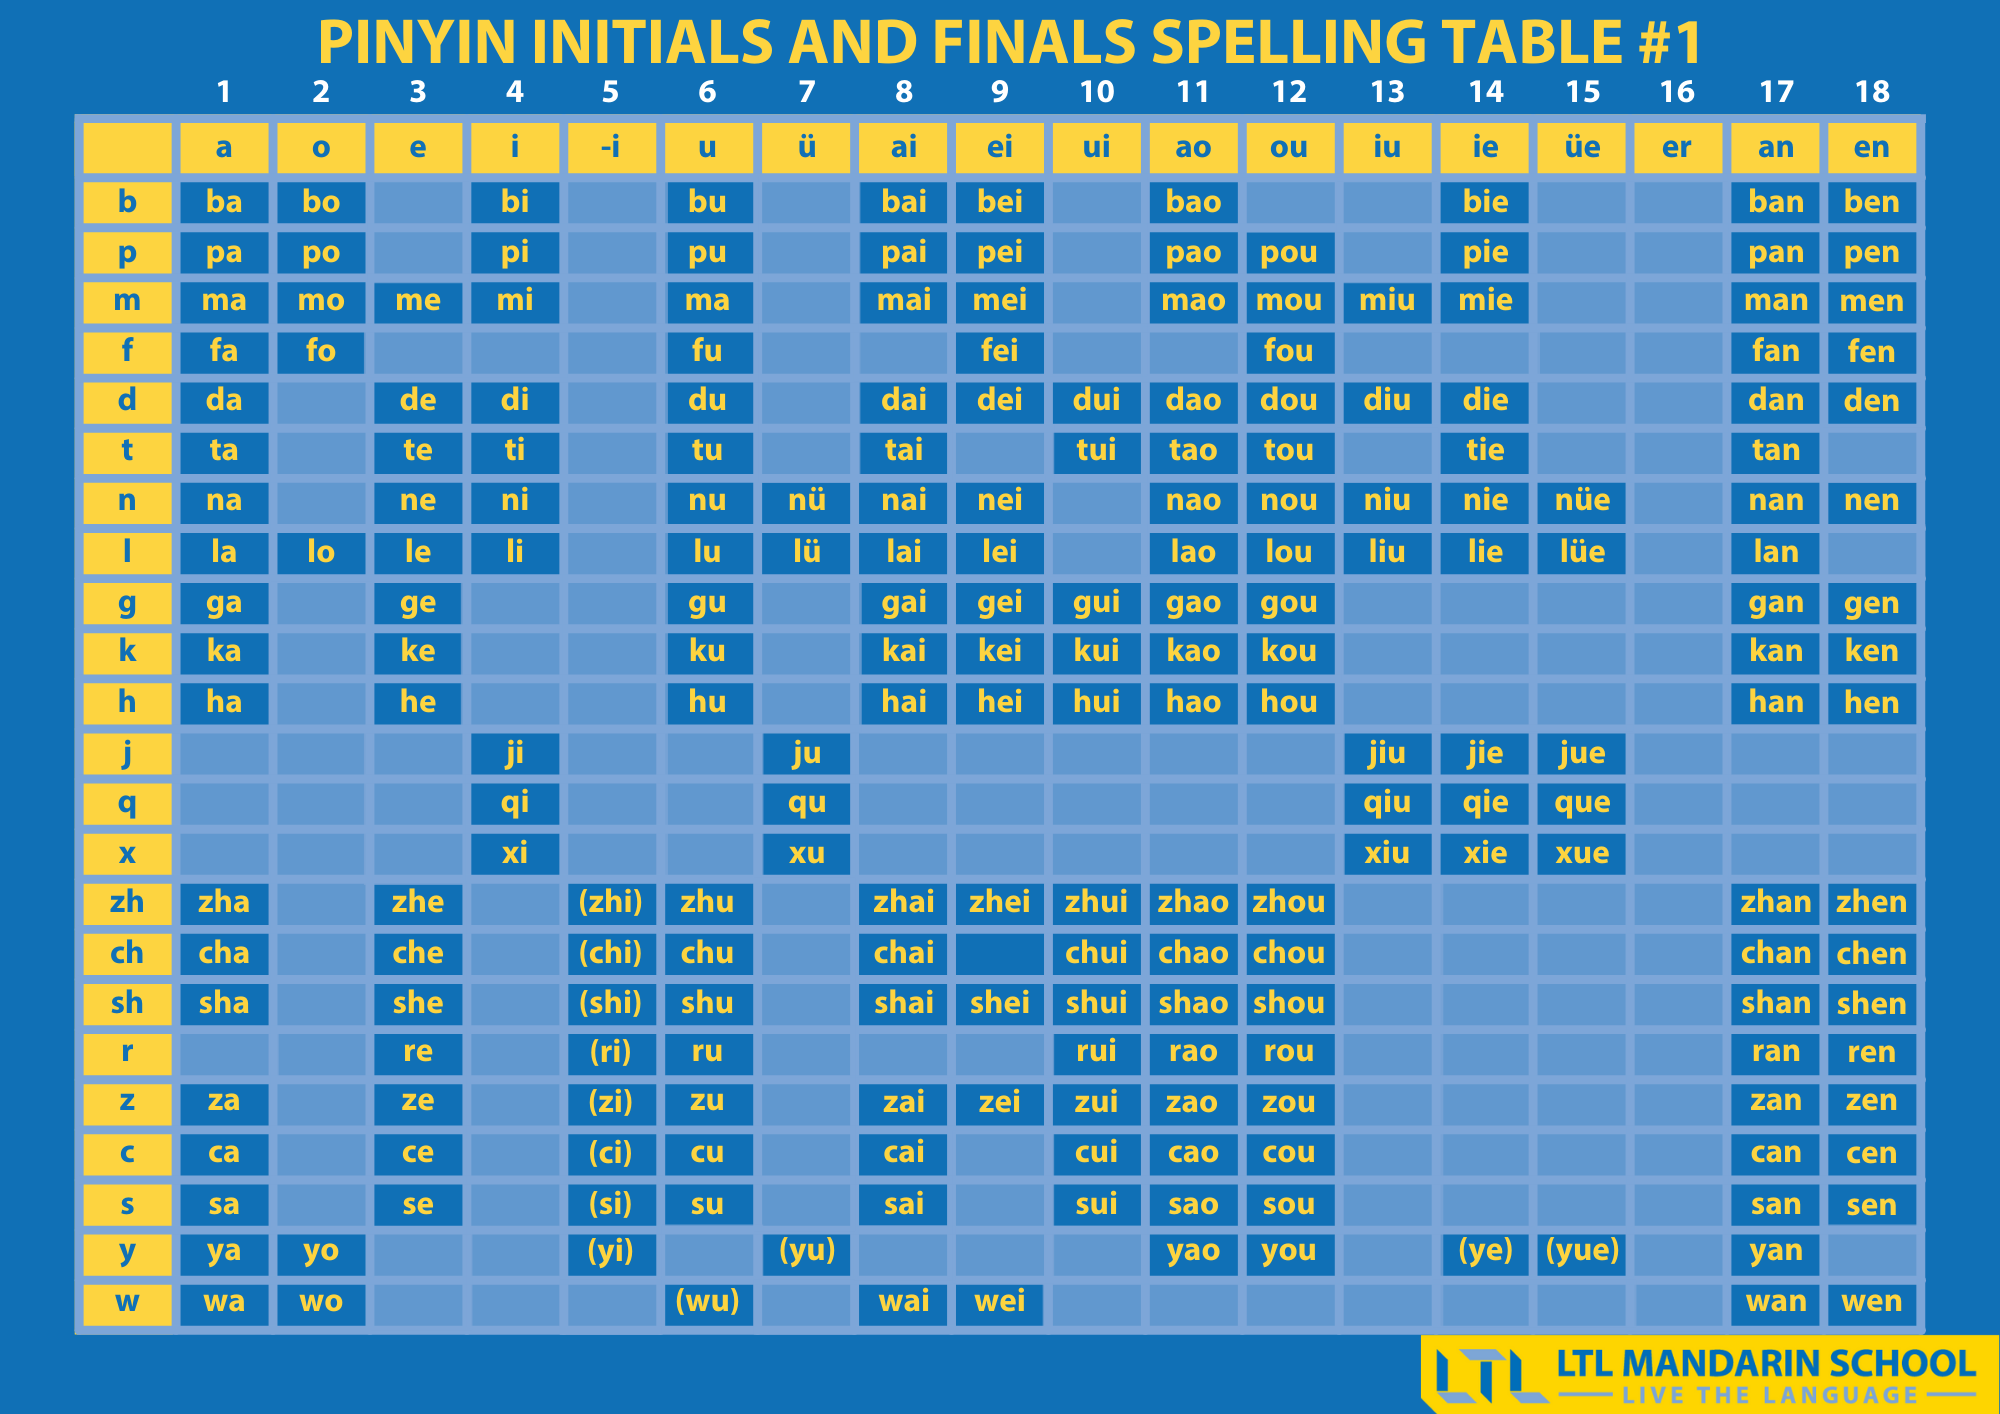 Pinyin Initials and Finals (1)